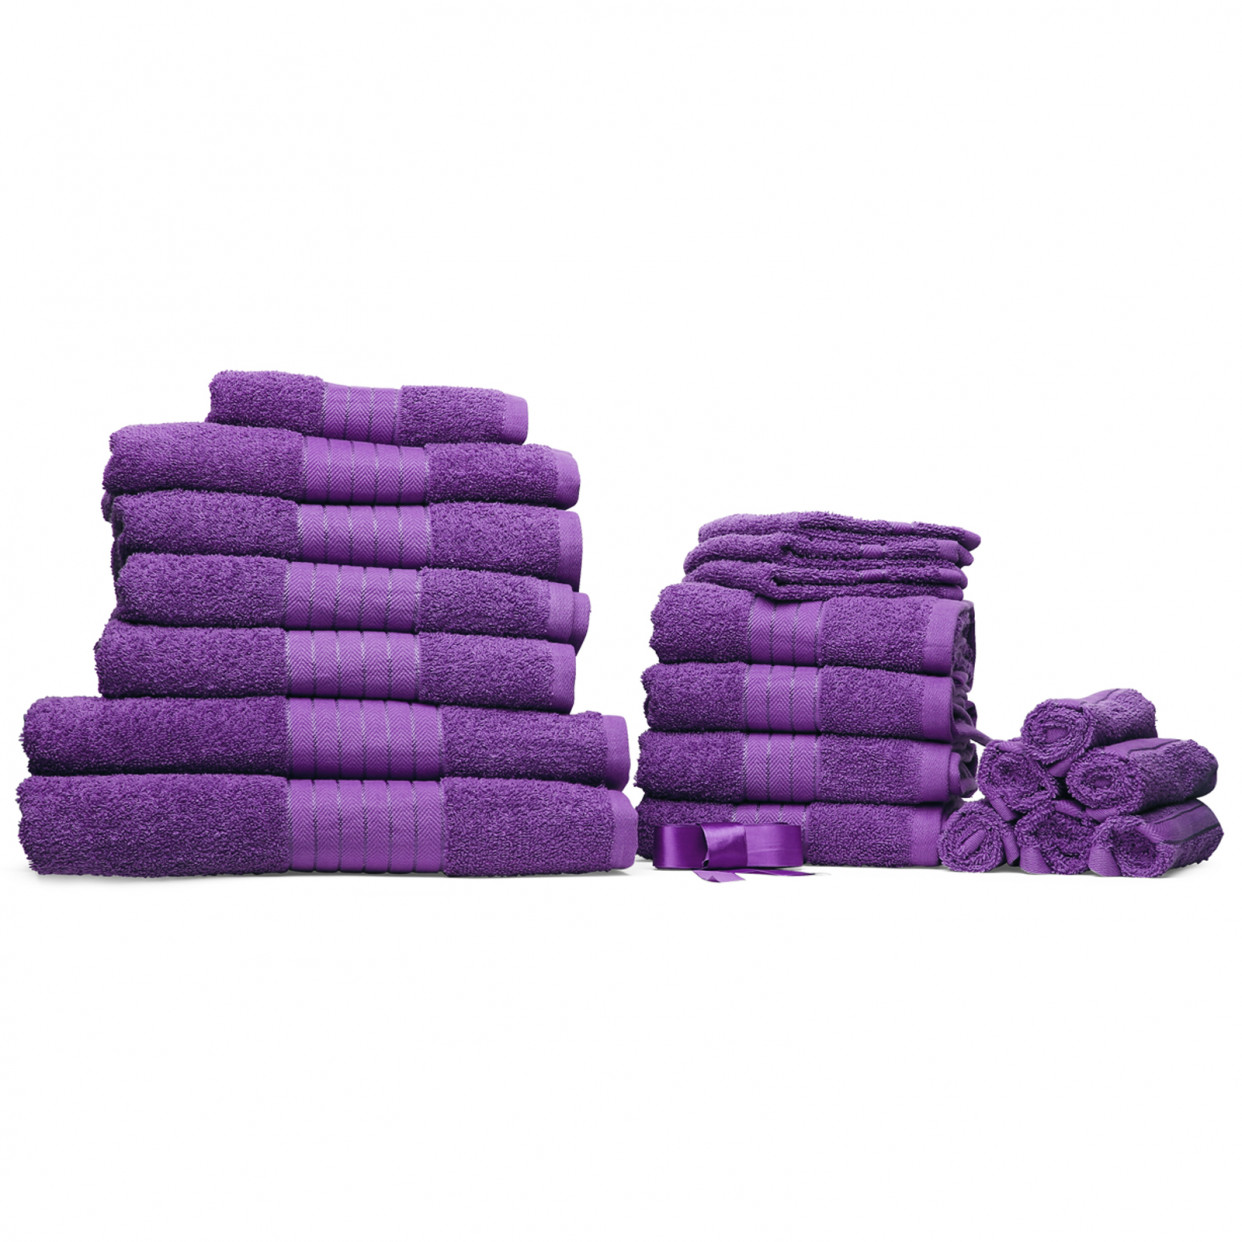 Dreamscene Towel Bale 20 Piece - Purple>